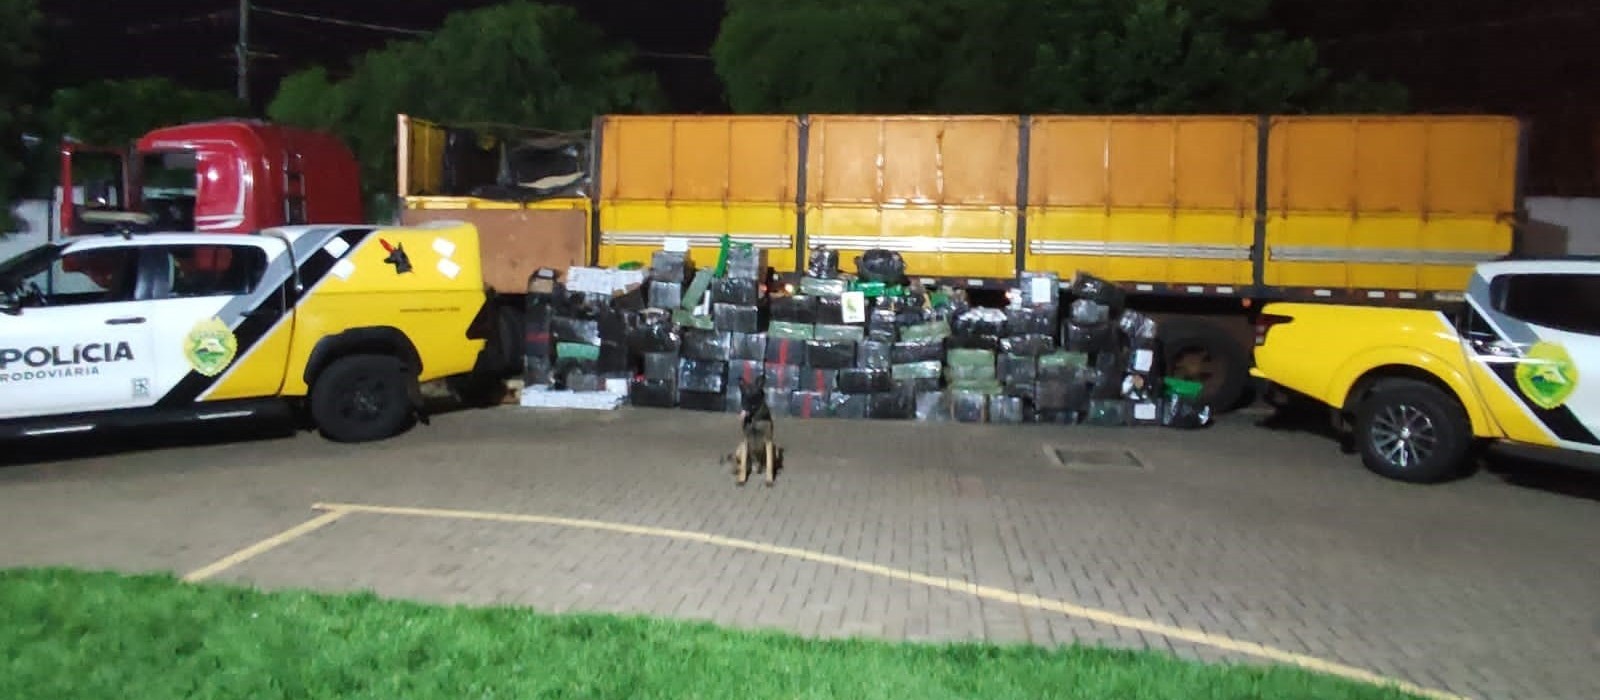 Polícia apreende caminhão com mais de 2 toneladas de maconha